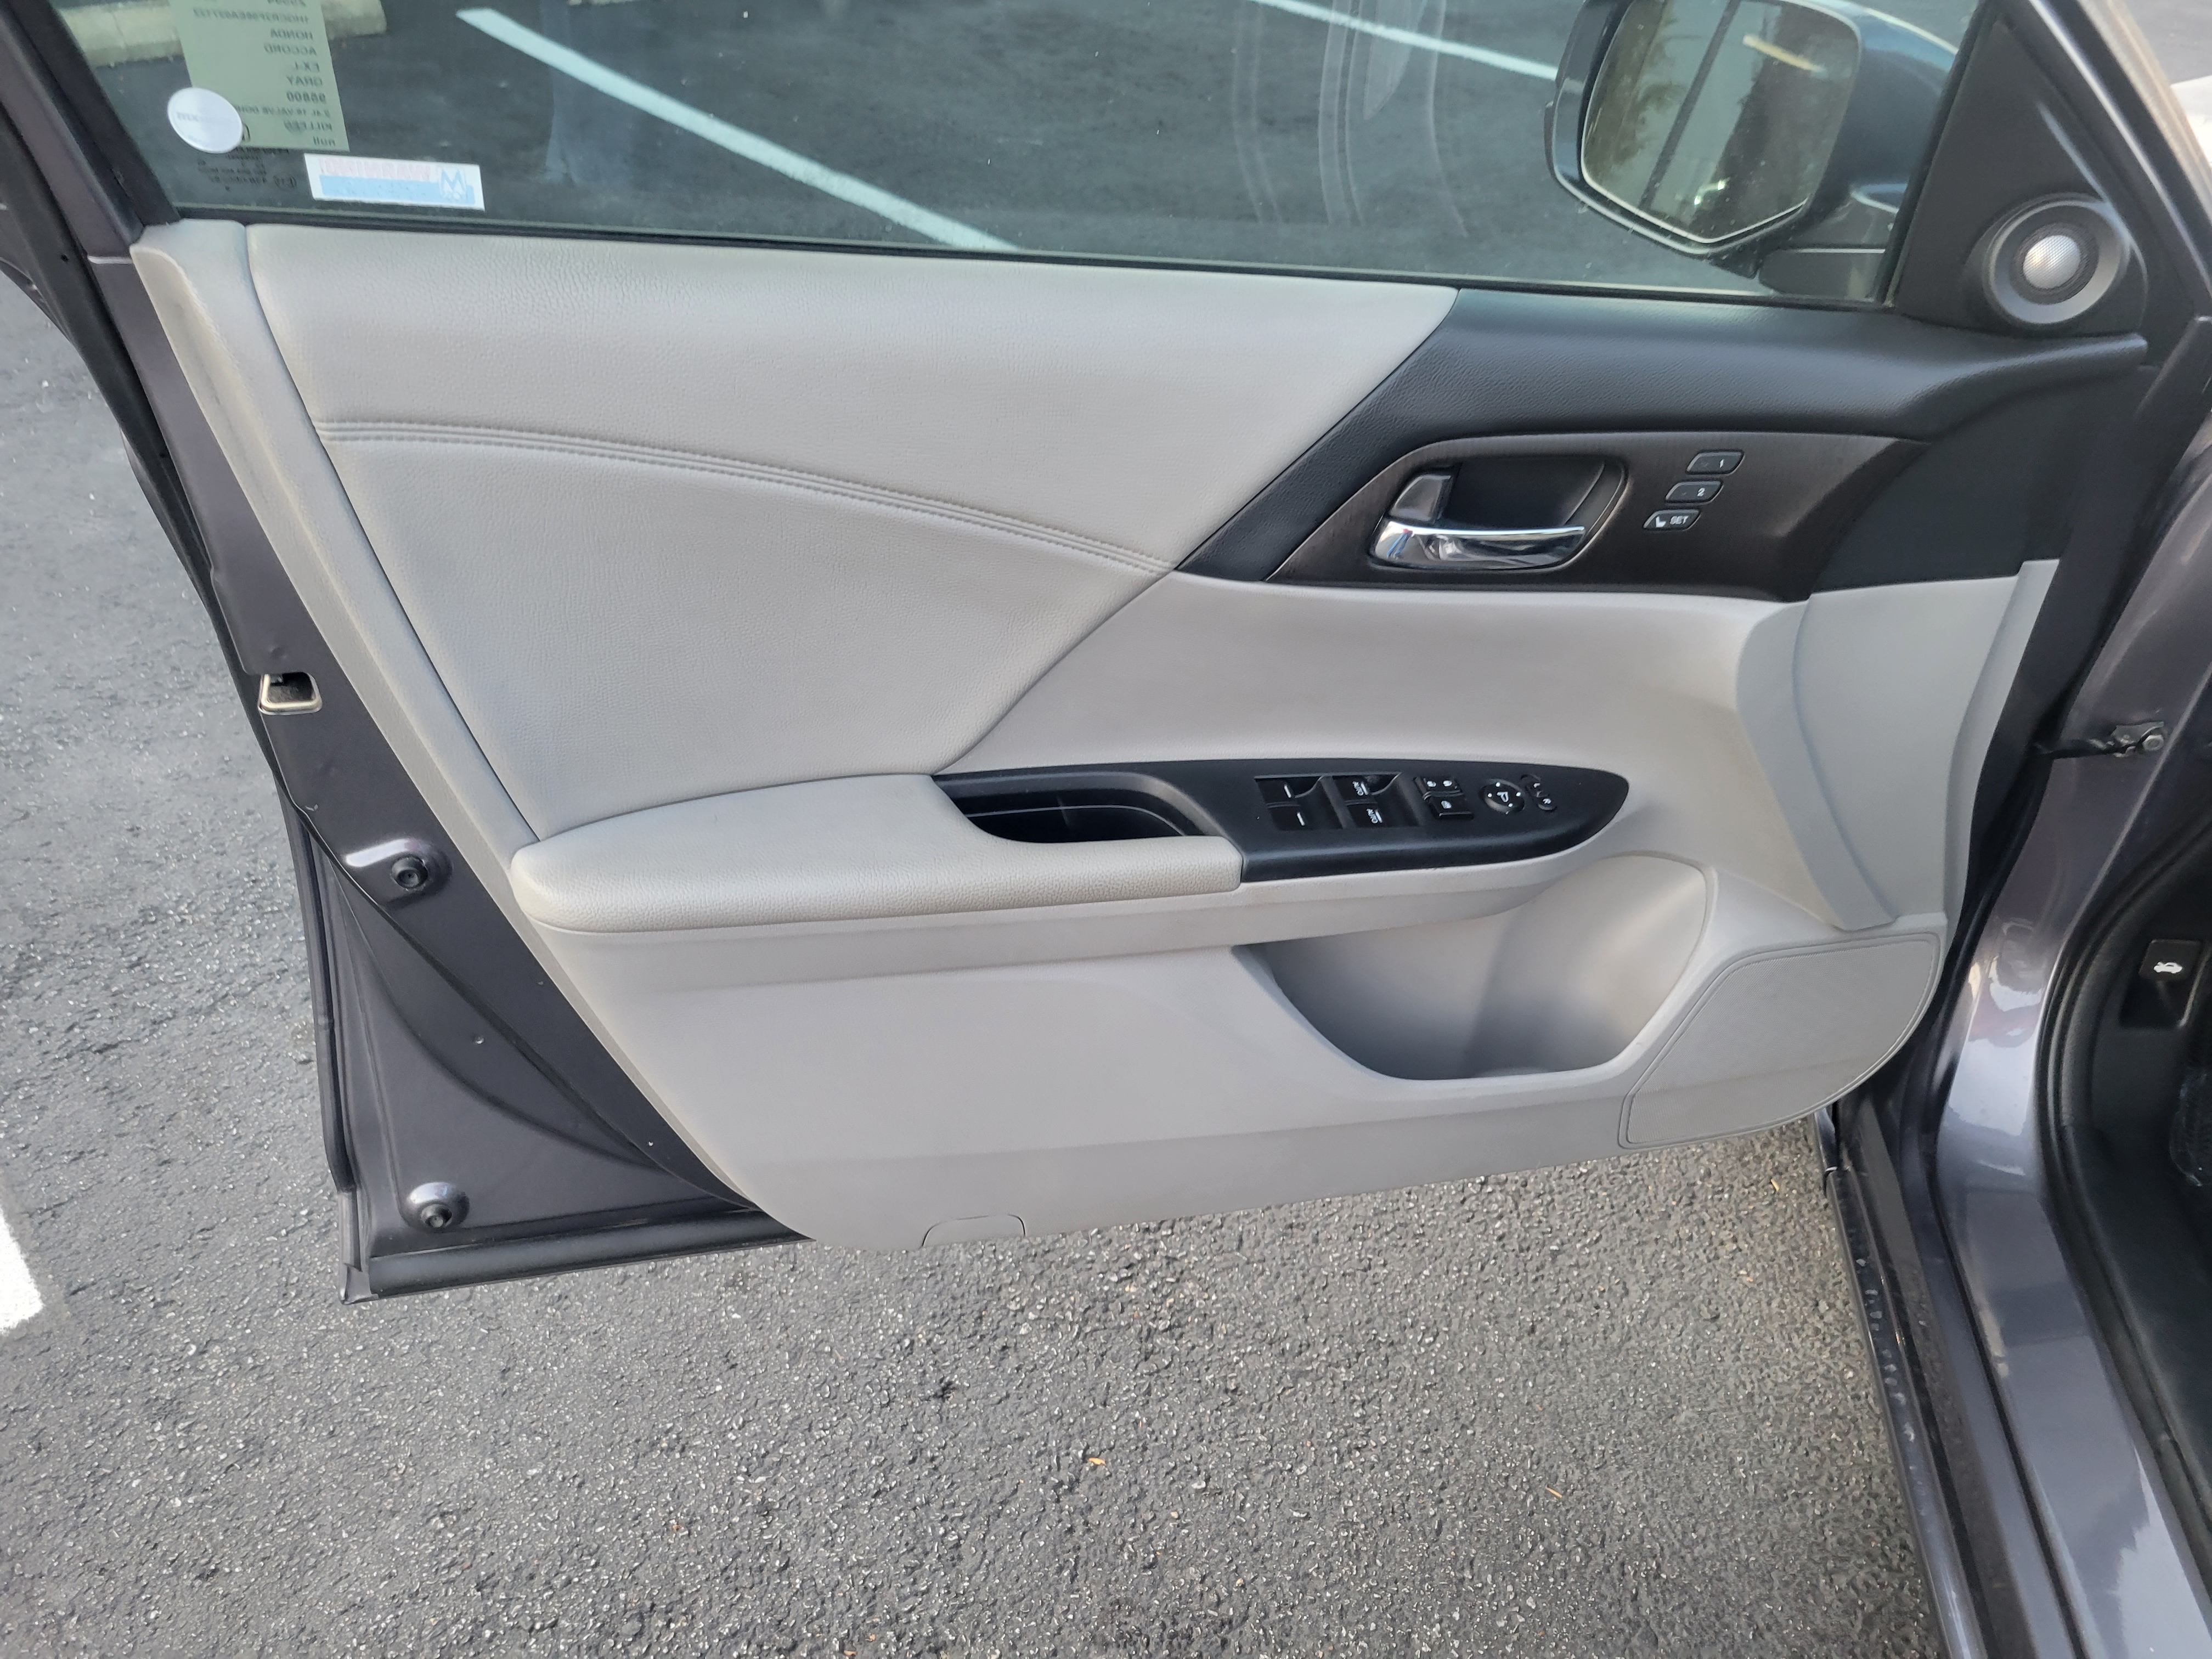 used vehicle - Sedan HONDA ACCORD 2014